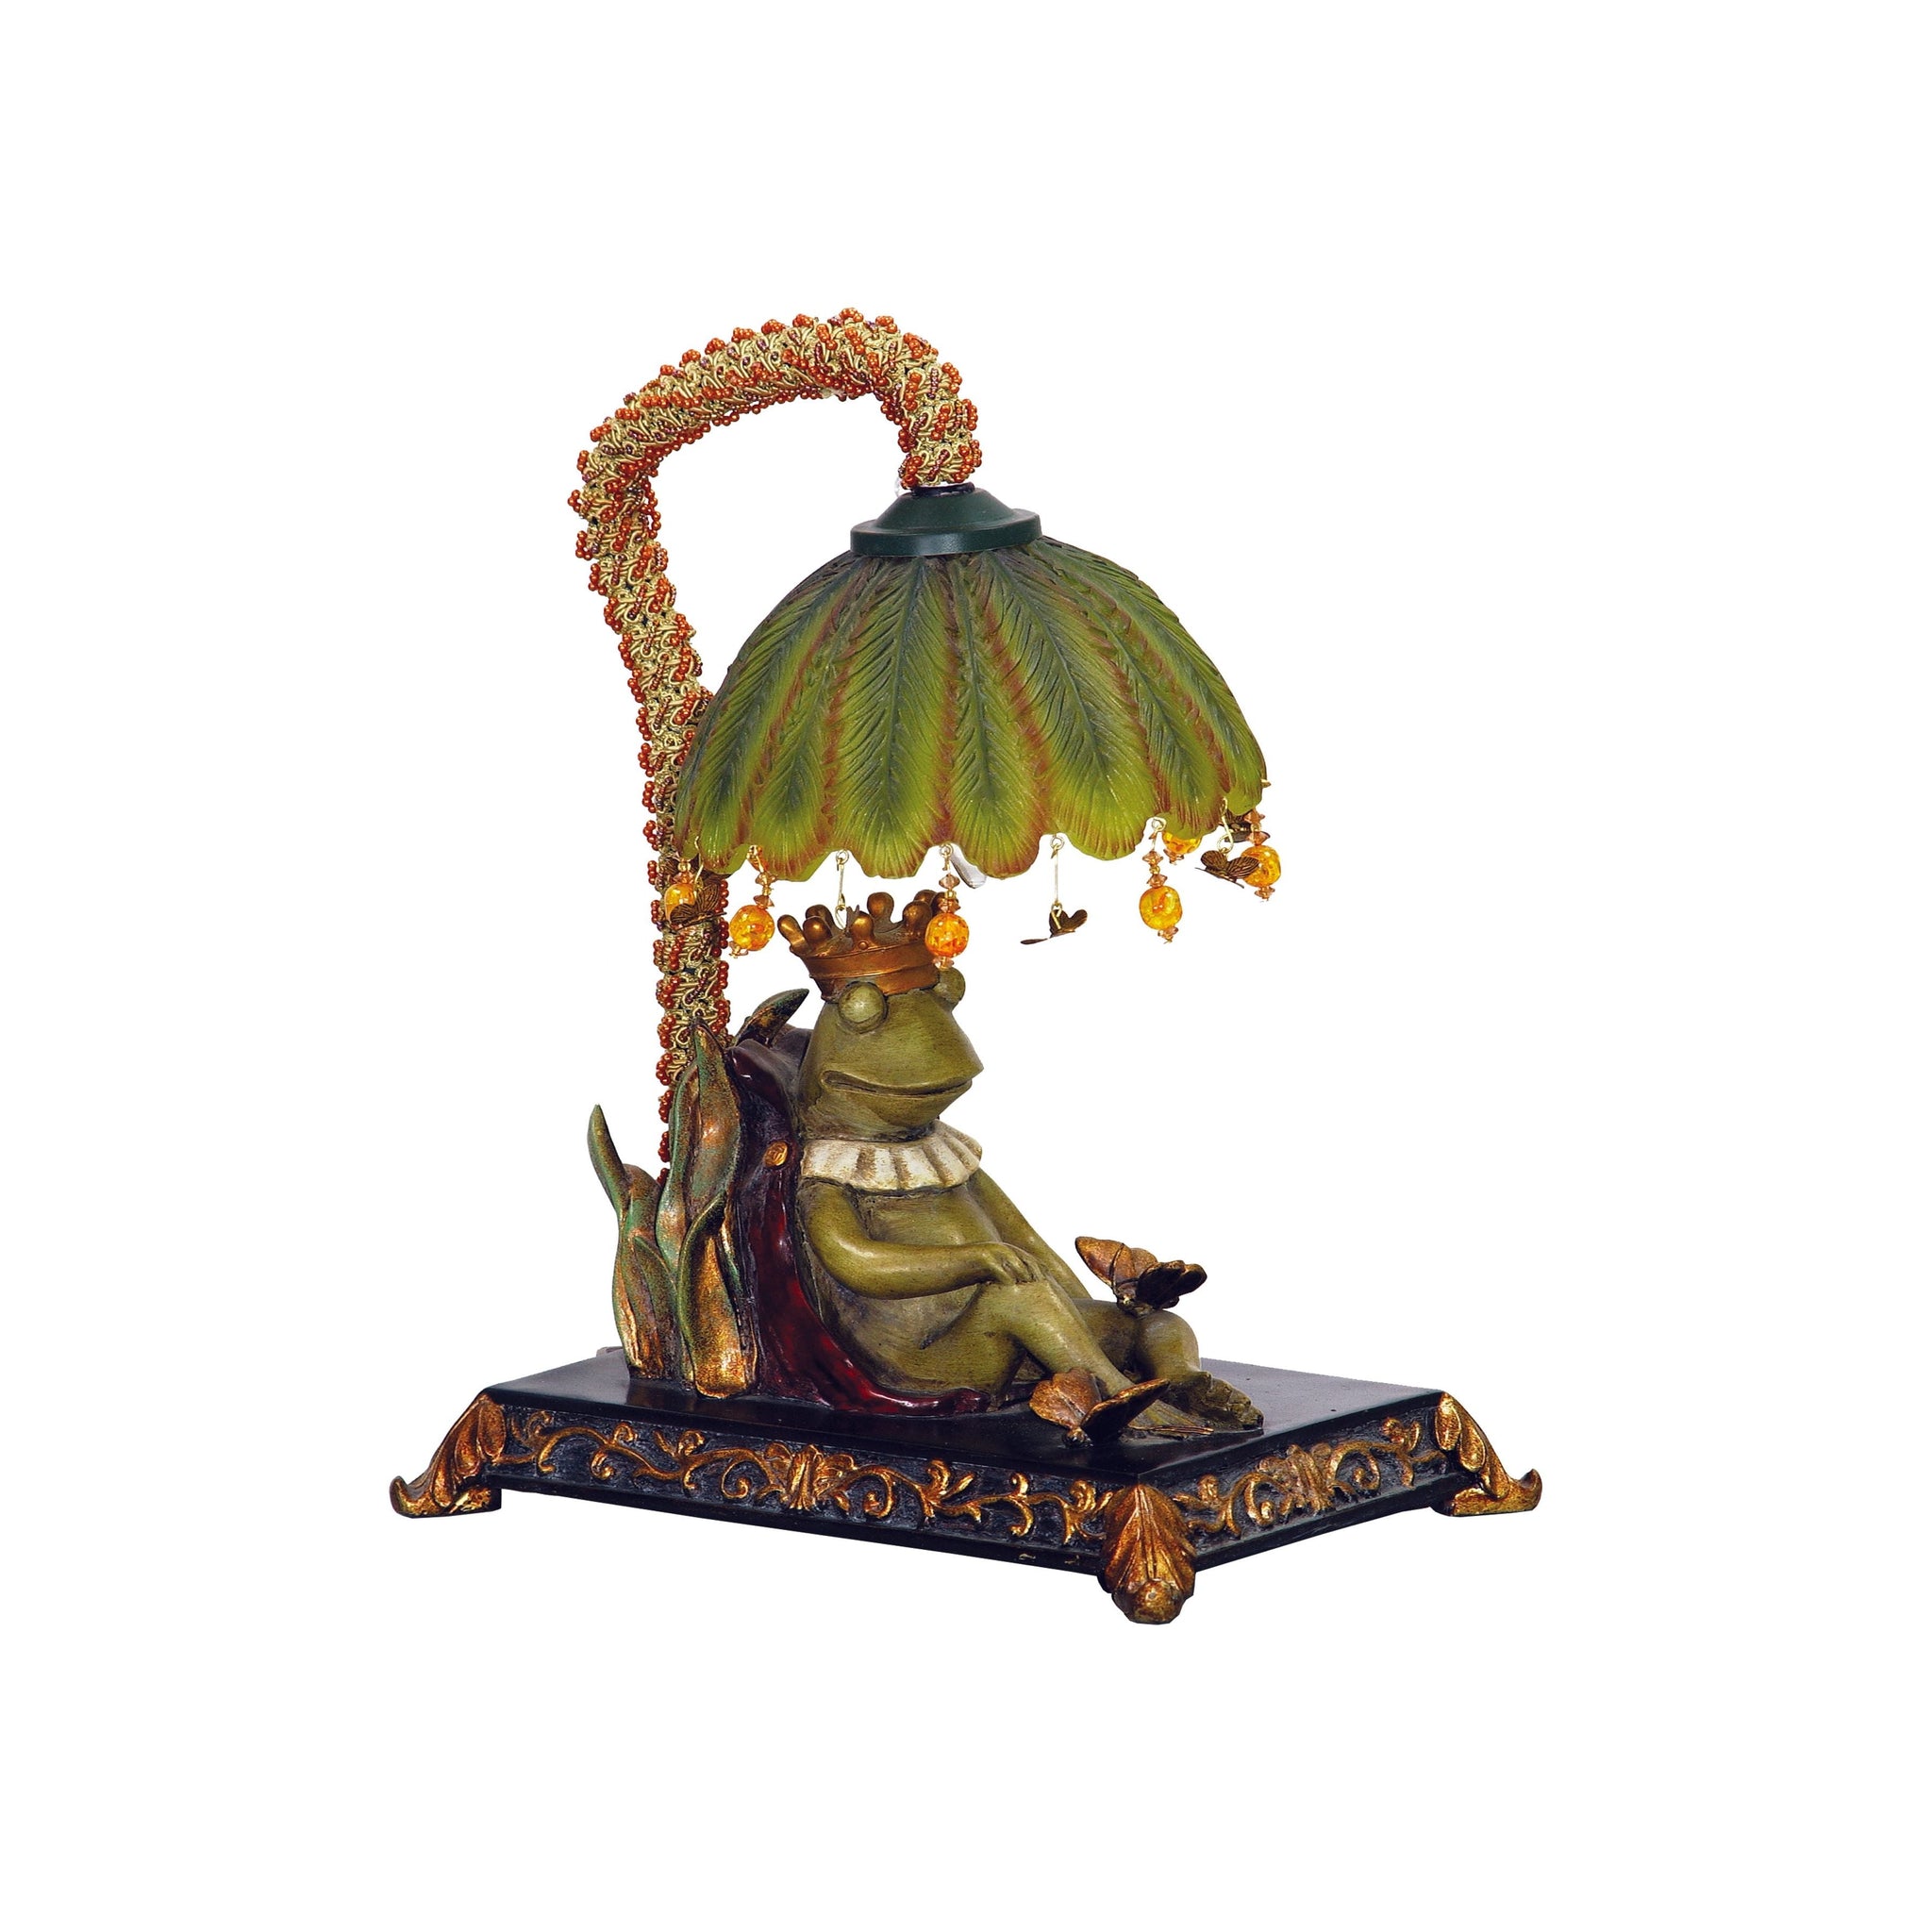 Sleeping King Frog 12.3" High 1-Light Table Lamp